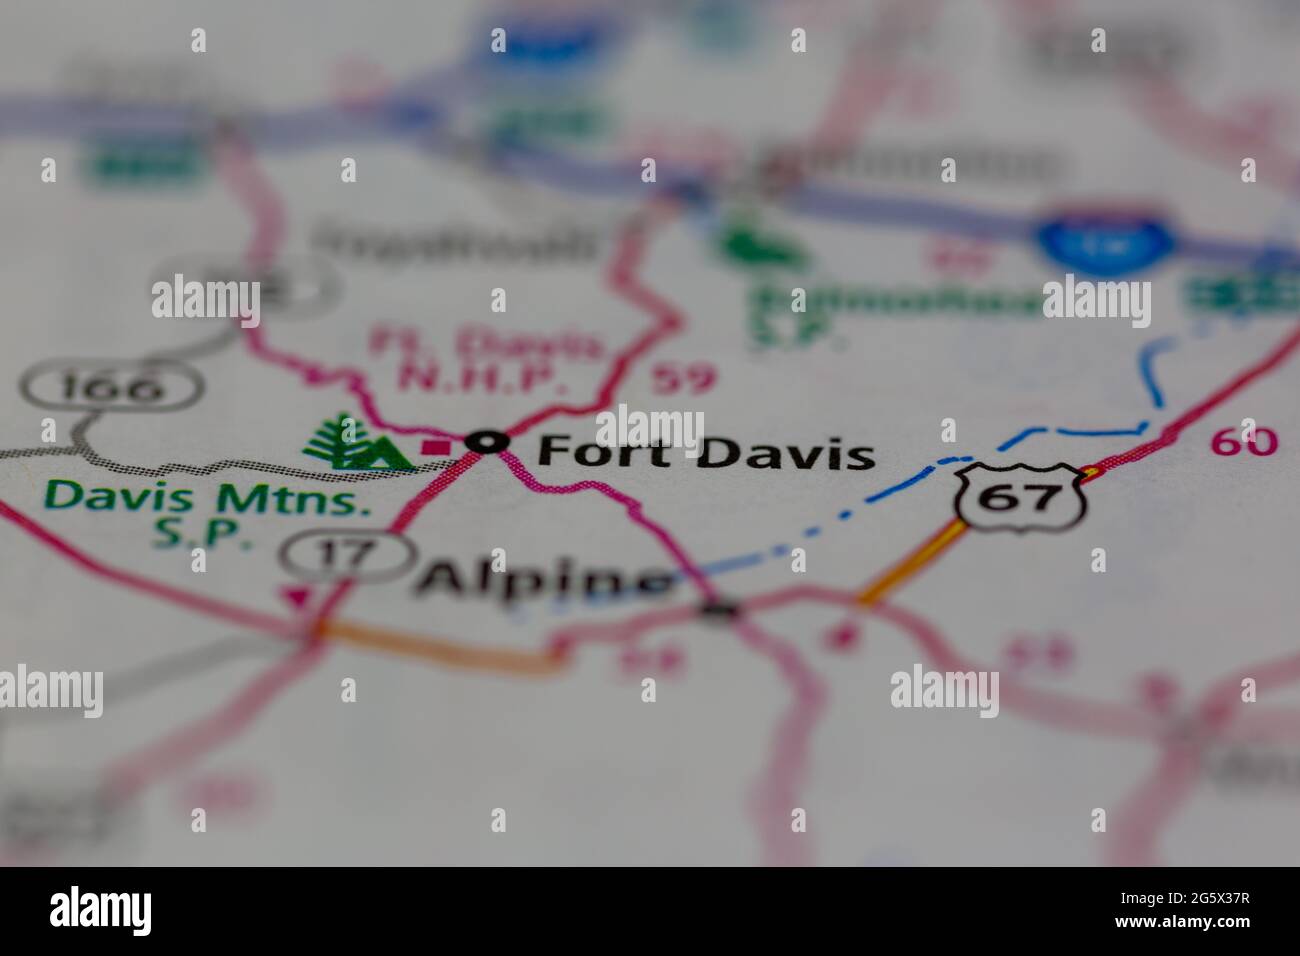 Fort Davis Texas USA auf einer Geografie- oder Straßenkarte angezeigt Stockfoto